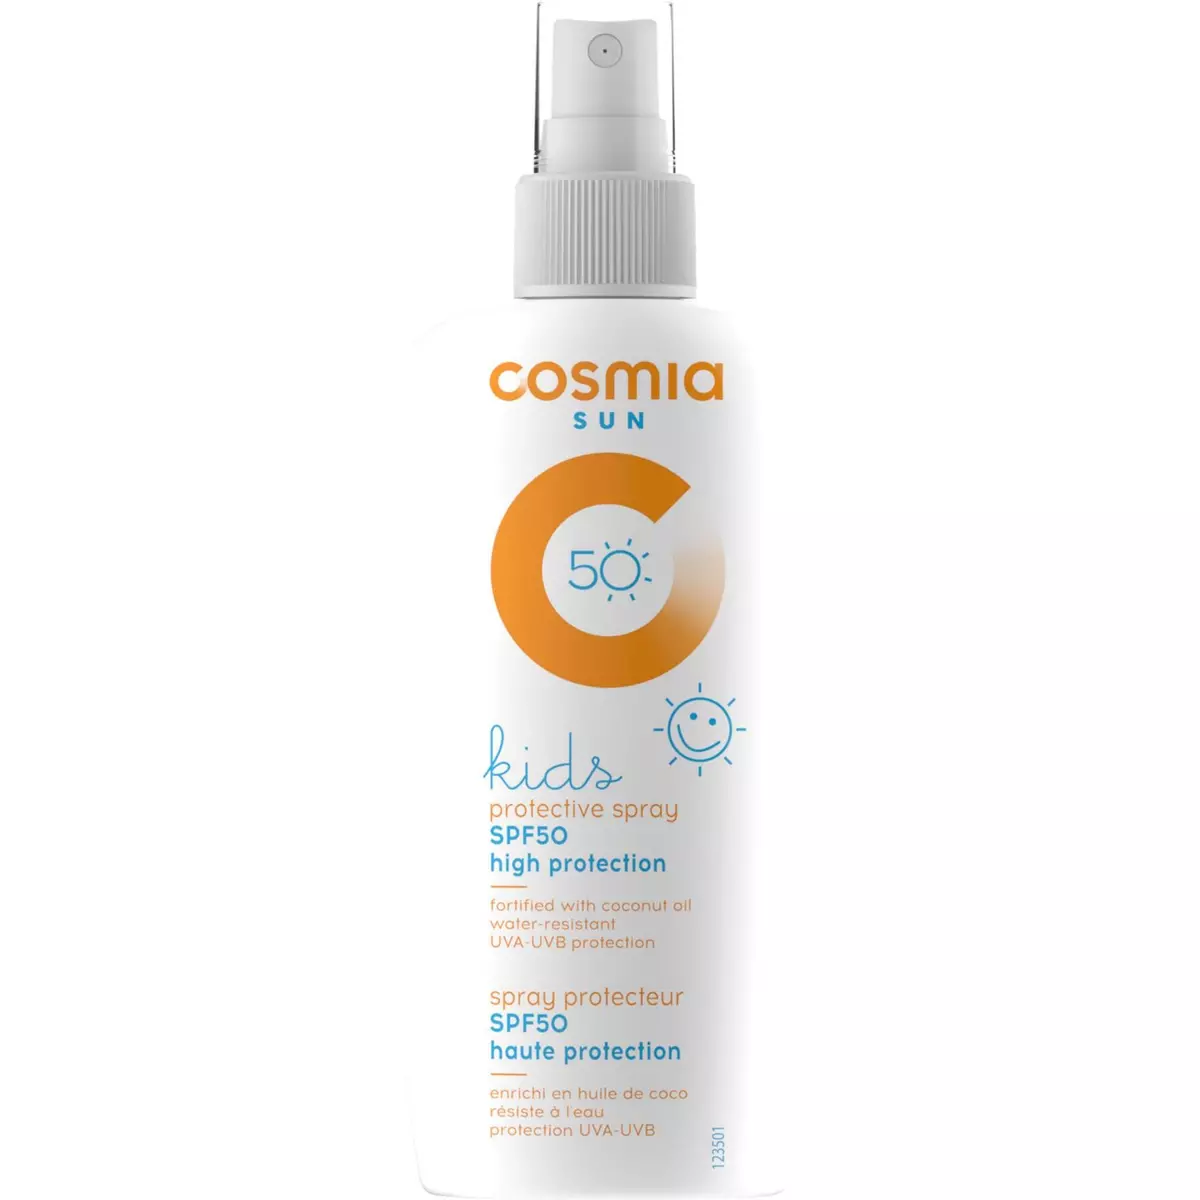 COSMIA SUN Sun spray solaire enfants coco résiste à l'eau haute protection SPF50 200ml